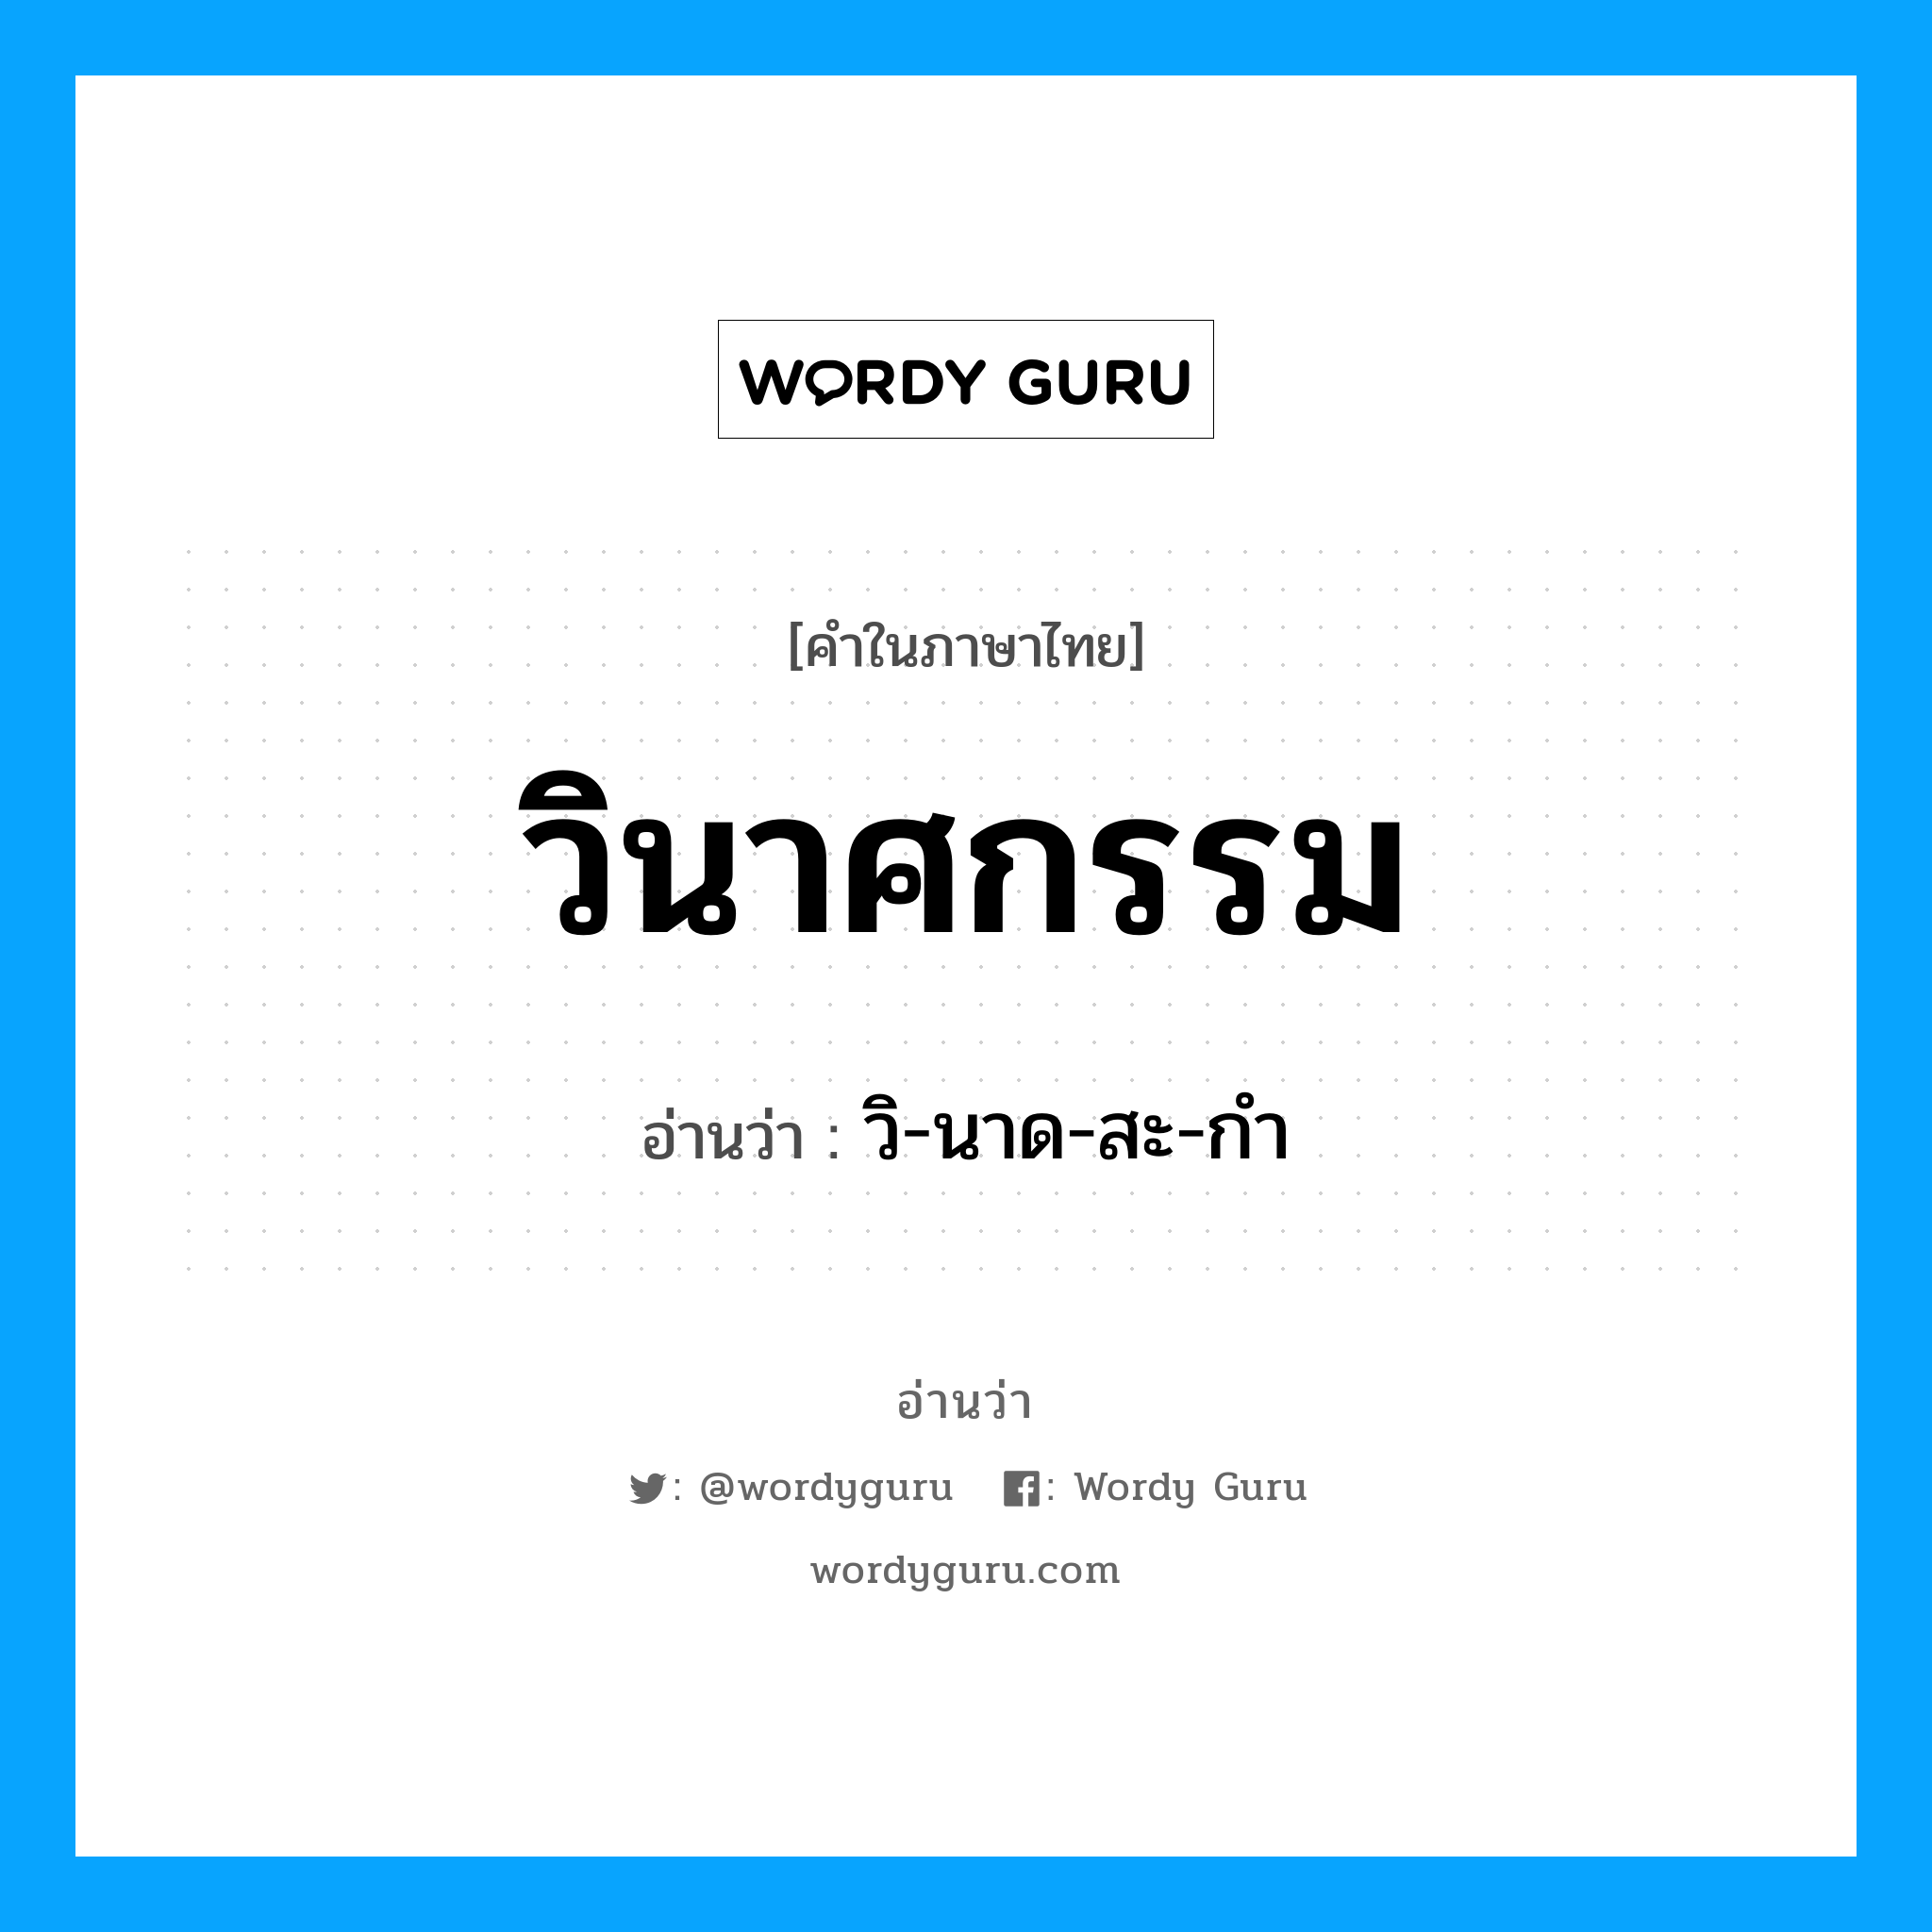 วิ-นาด-สะ-กำ เป็นคำอ่านของคำไหน?, คำในภาษาไทย วิ-นาด-สะ-กำ อ่านว่า วินาศกรรม